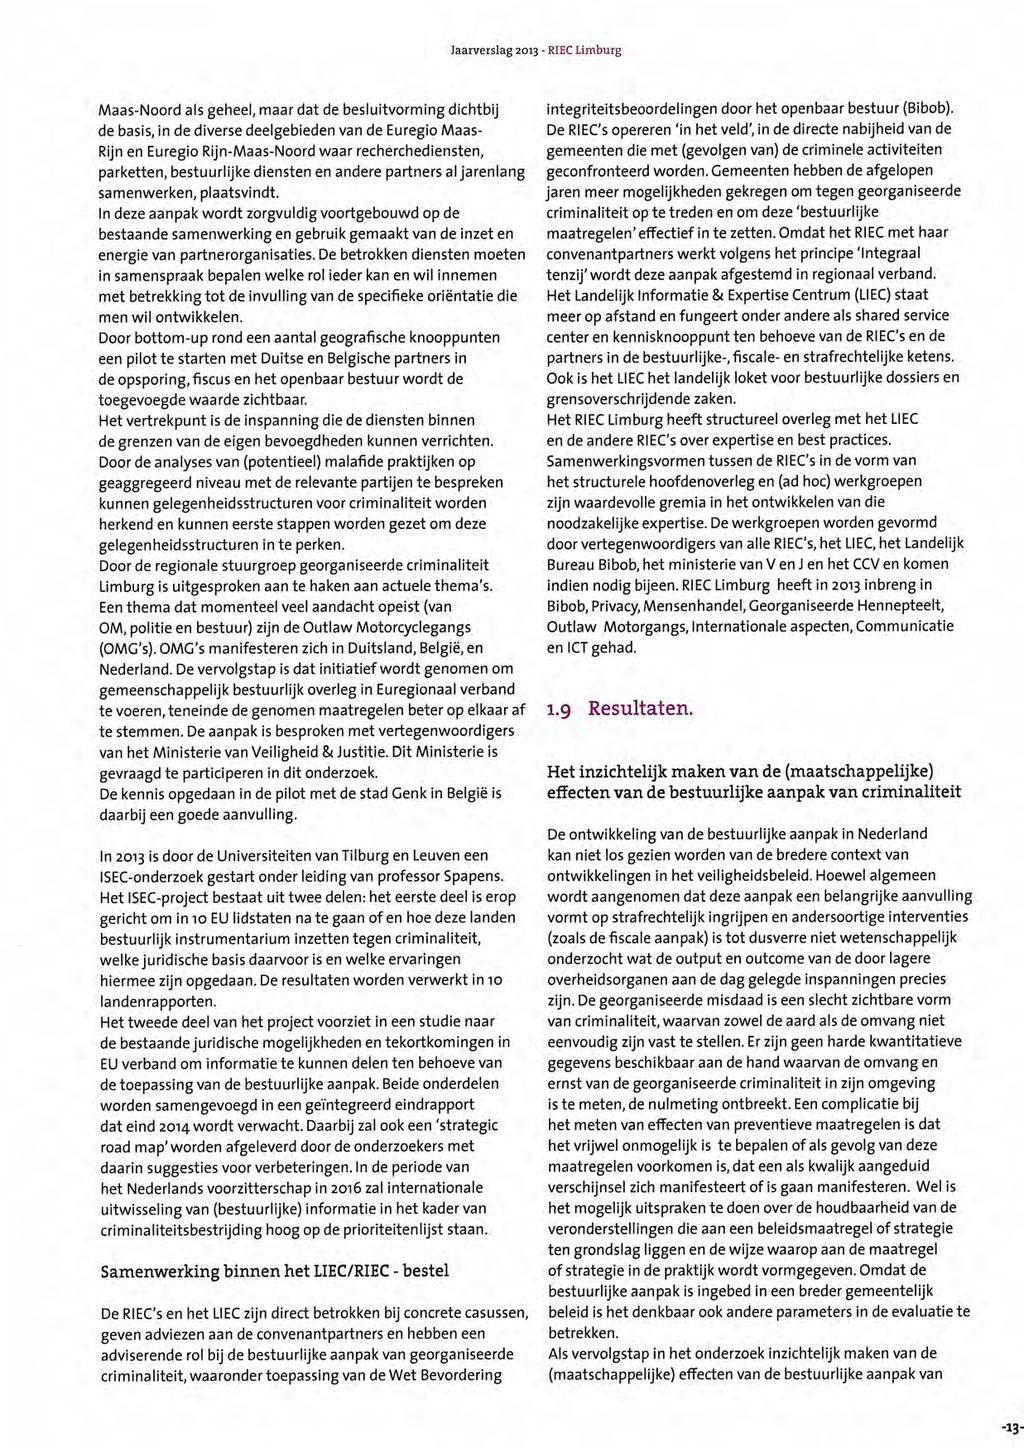 -13- Jaarverslag 2013 - RIEC Limburg Maas-Noord als geheel, maar dat de besluitvorming dichtbij de basis, in de diverse deelgebieden van de Euregio Maas- Rijn en Euregio Rijn-Maas-Noord waar